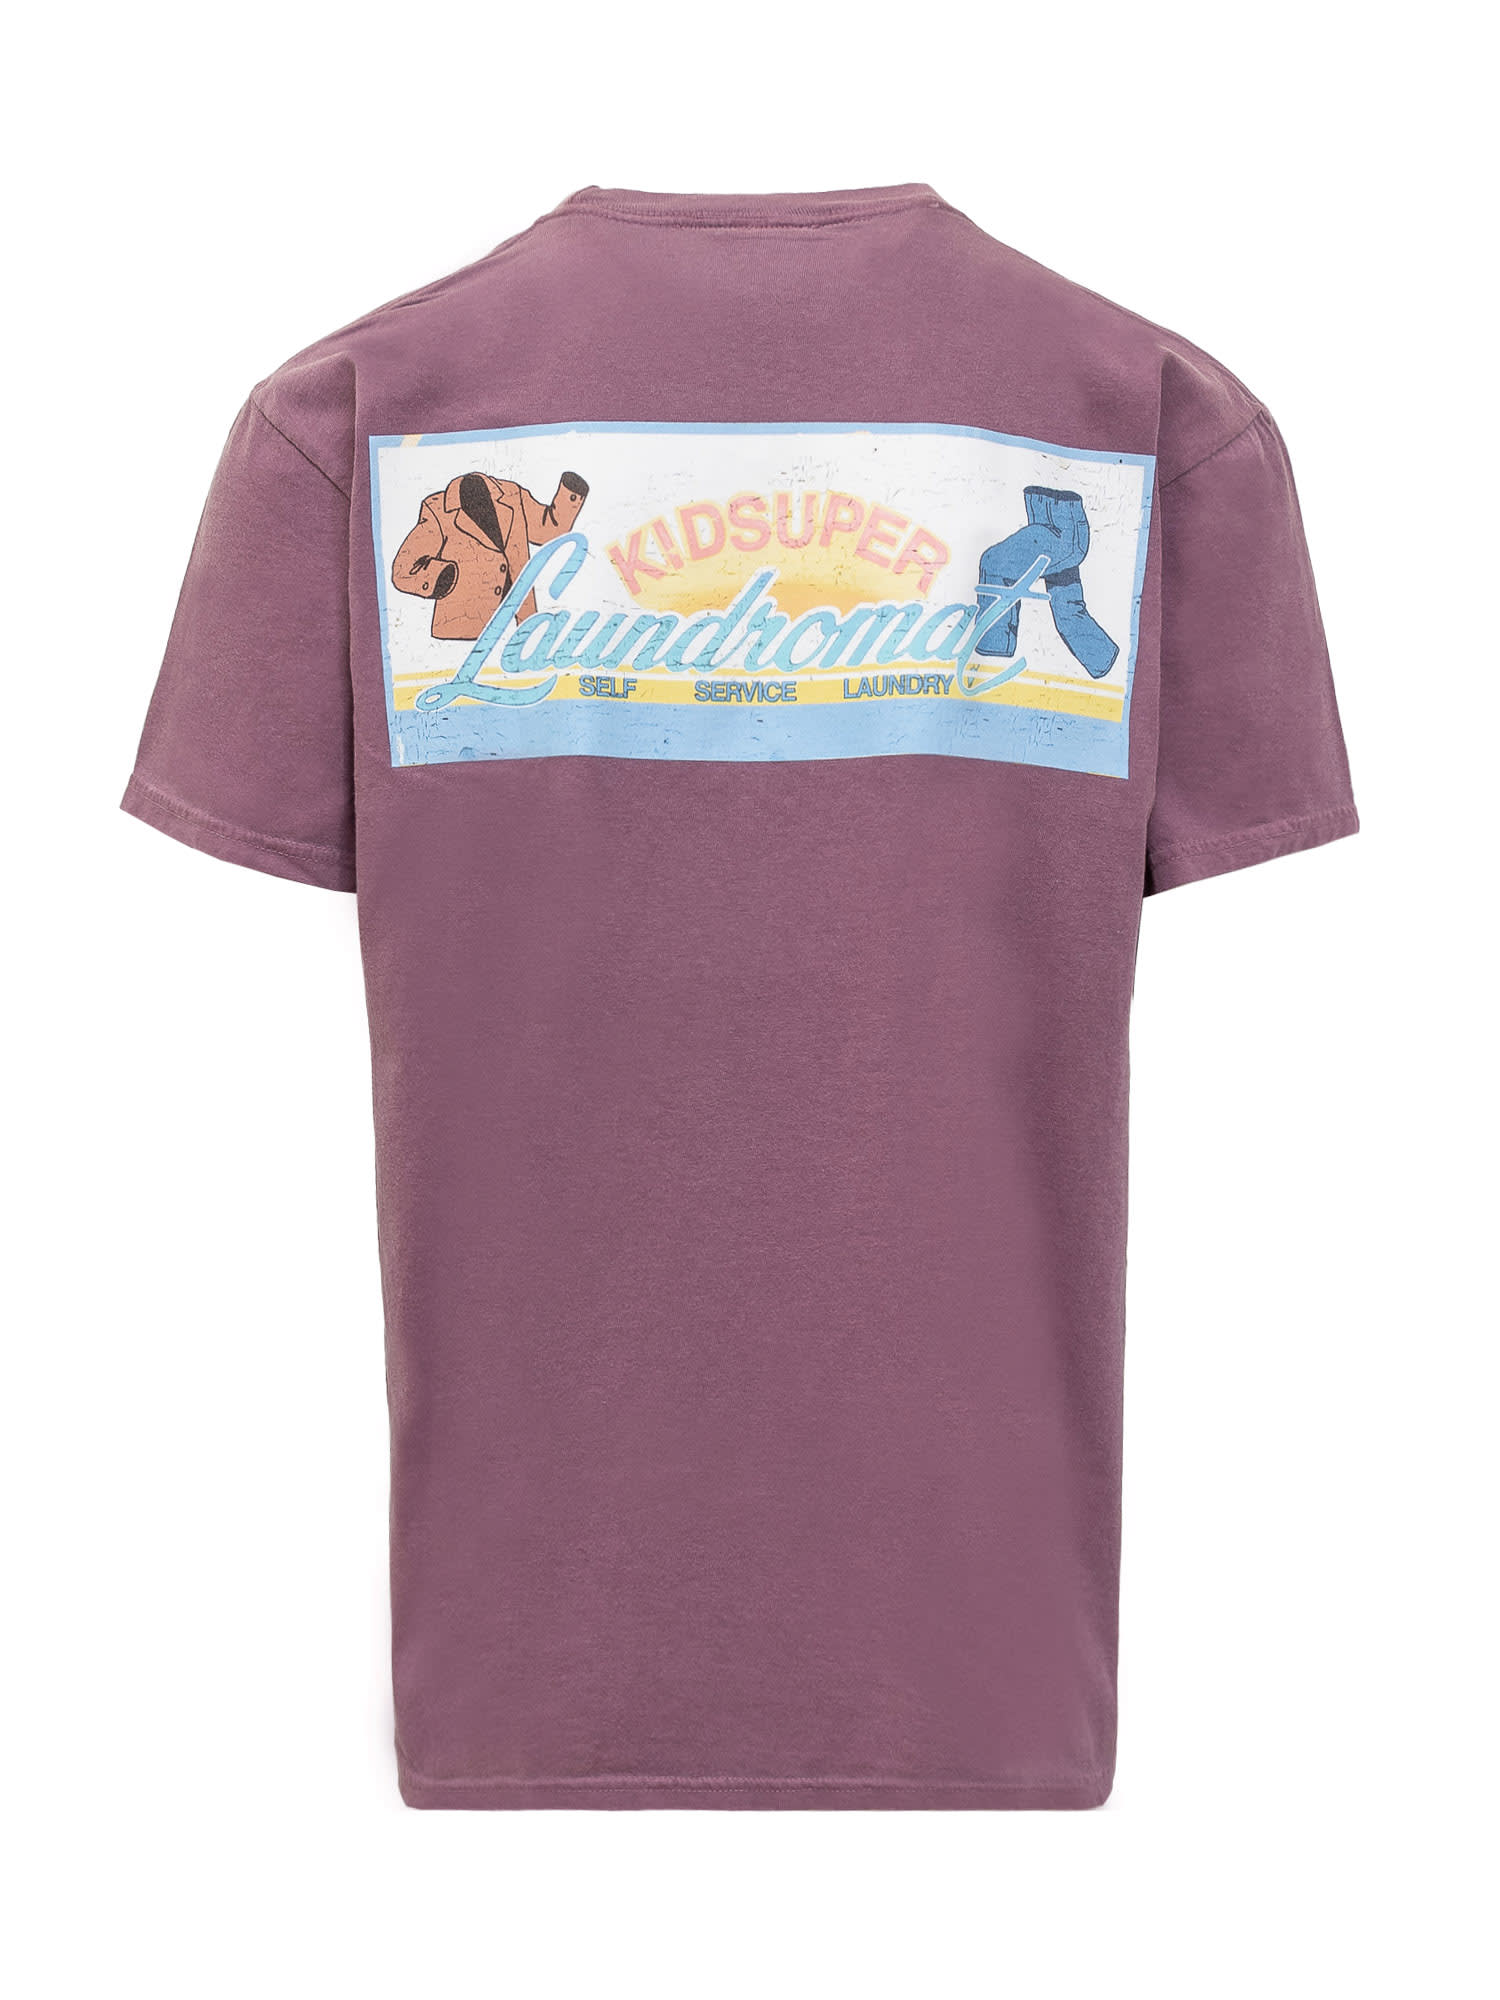 Shop Kidsuper Laundromat T-shirt In Plum